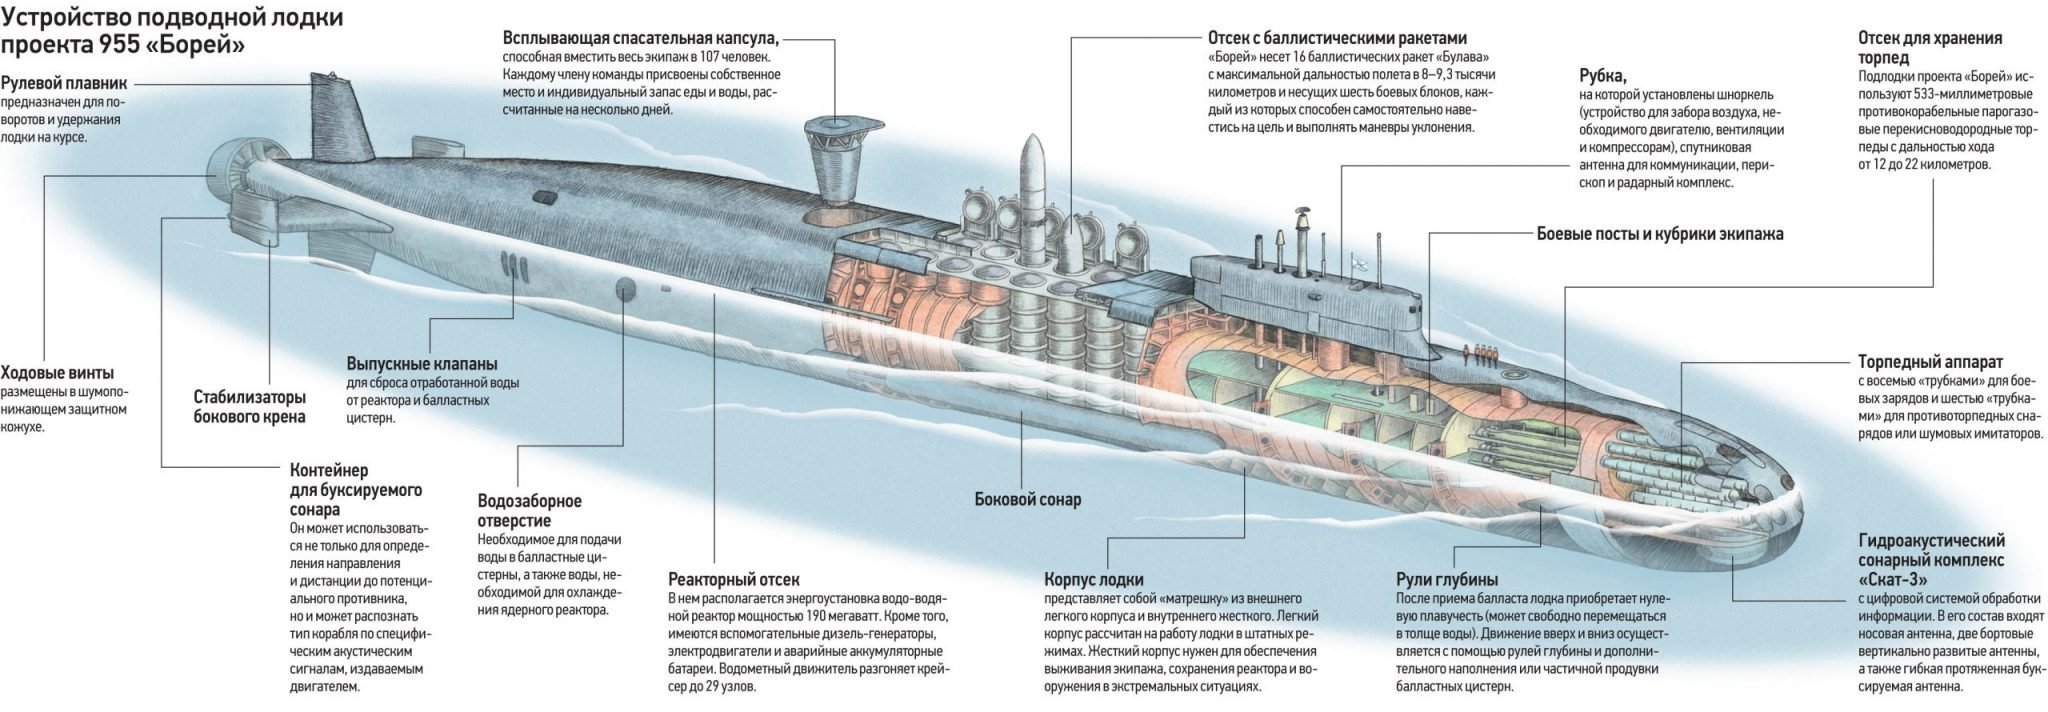 Сборка подводной лодки. Подводная лодка проекта 955 Борей. Подводная лодка 955 Борей чертёж. Подводная лодка 4 поколения Борей. Подлодка Борей проекта 955 чертеж.